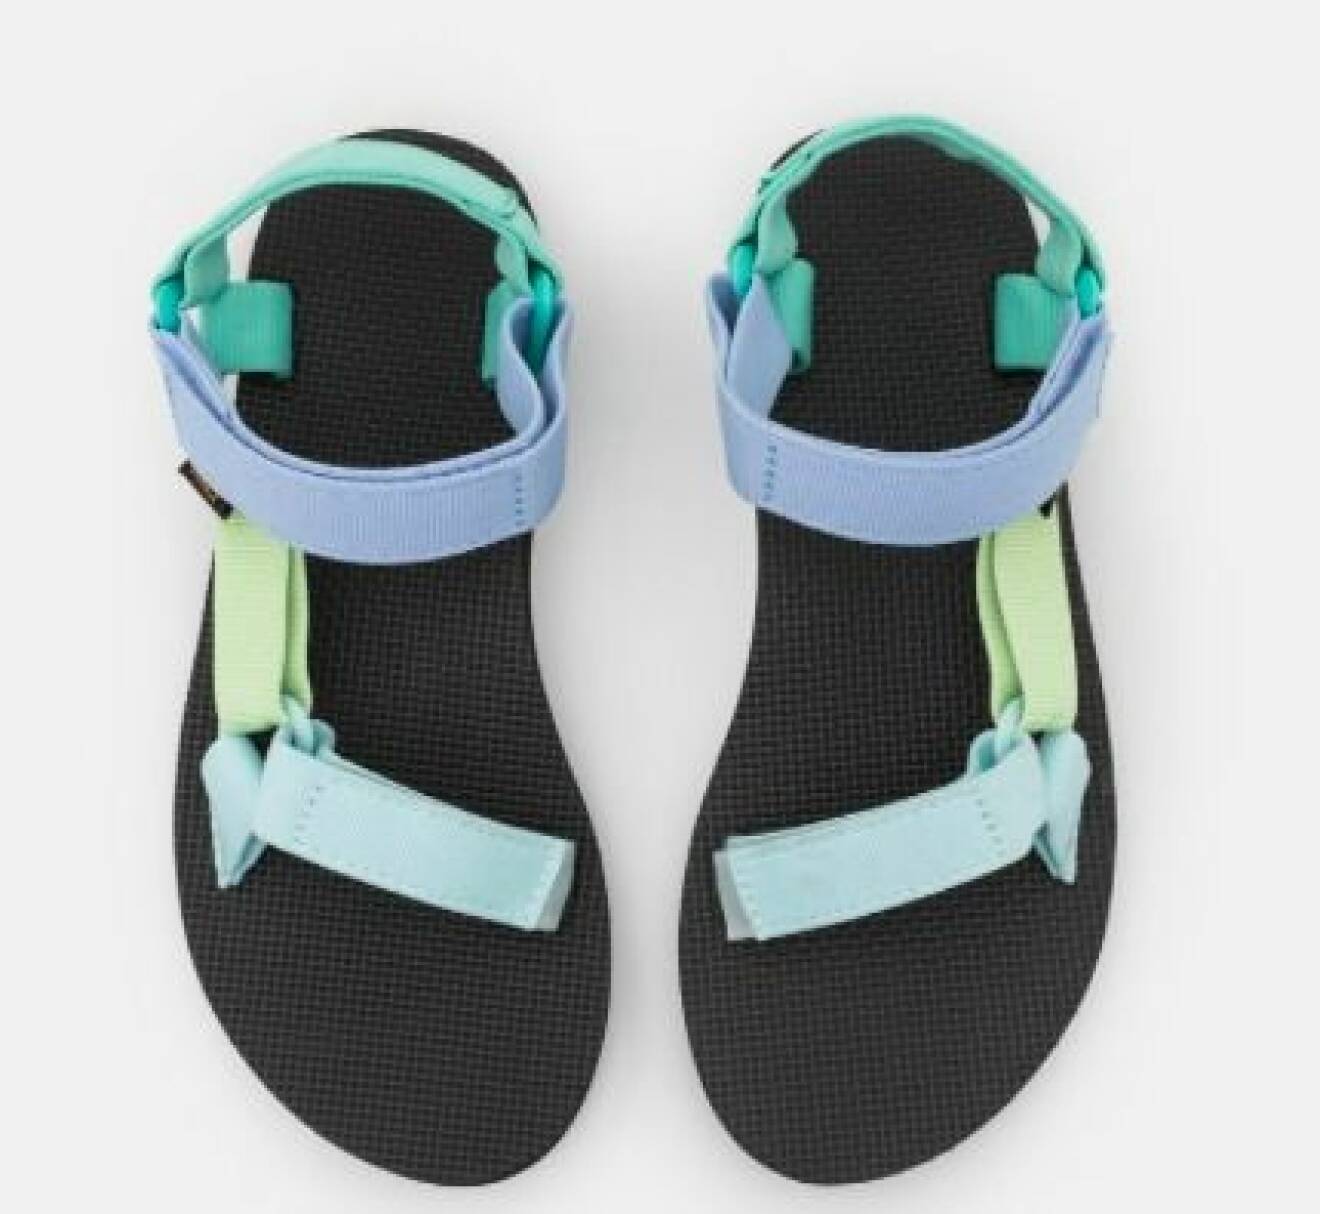 Sportiga sandaler med karborreband. Band i olika gröna och blå nyanser. Sandaler från Teva.